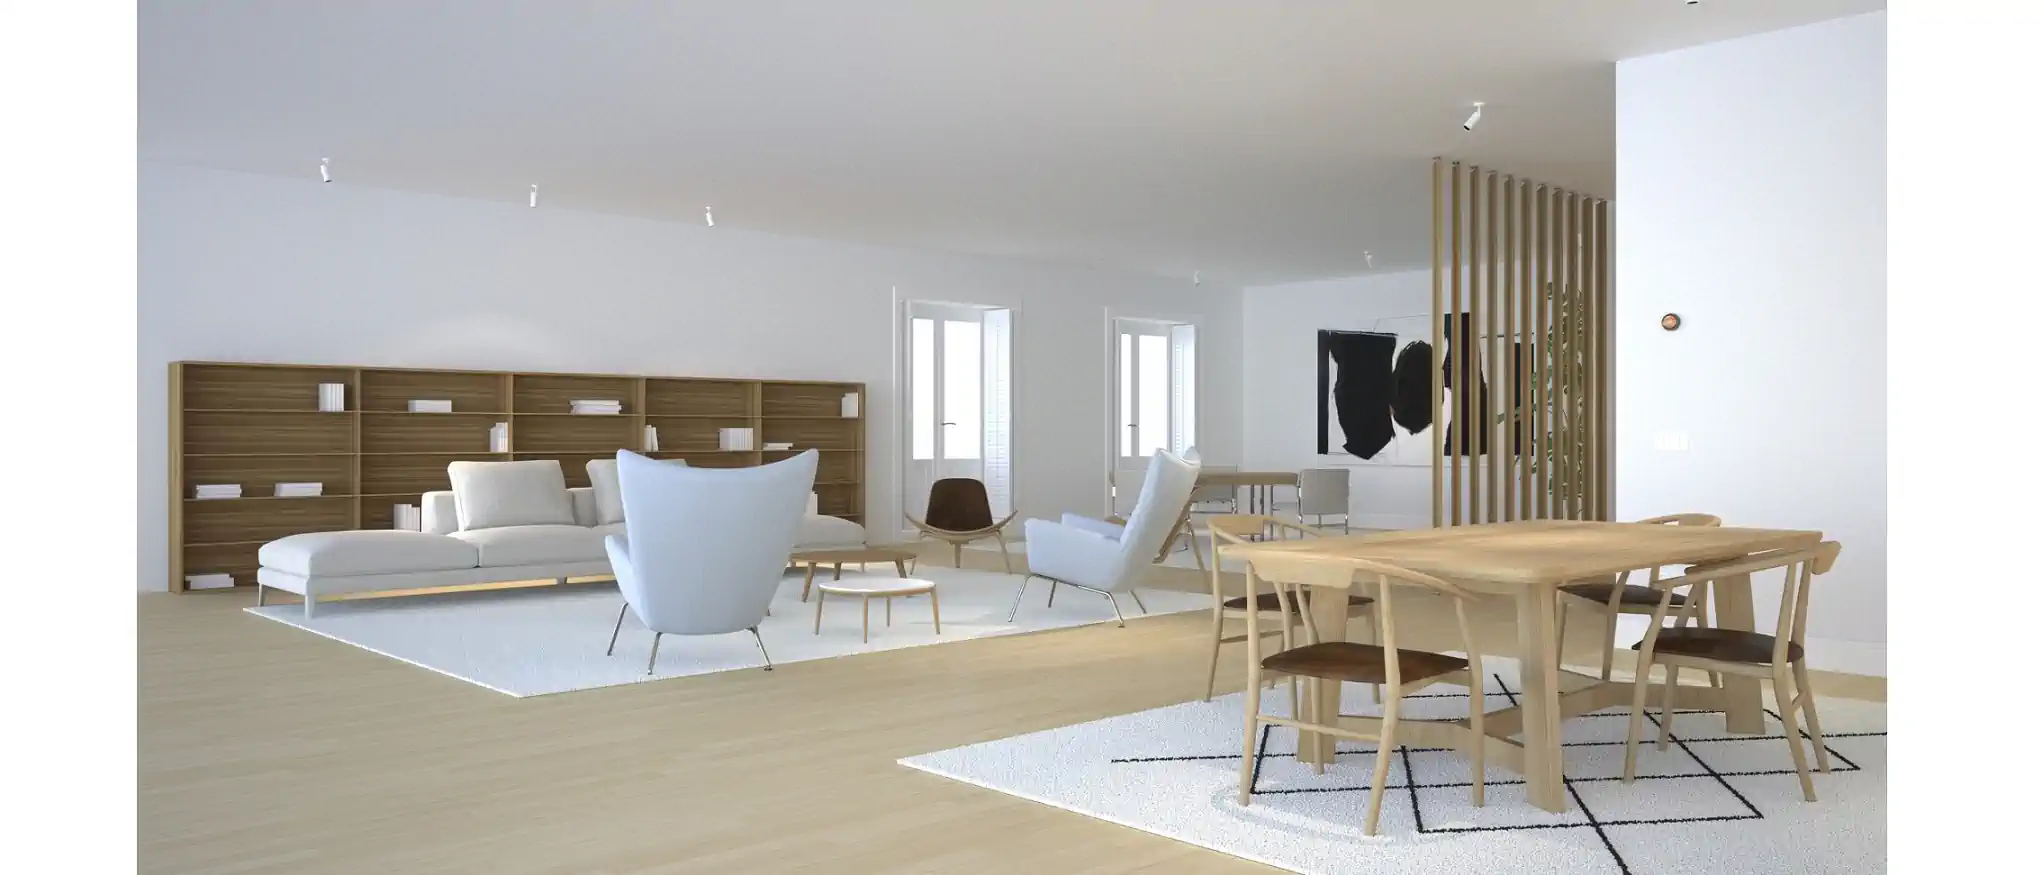 proyecto para vivienda de diseño escandinavo